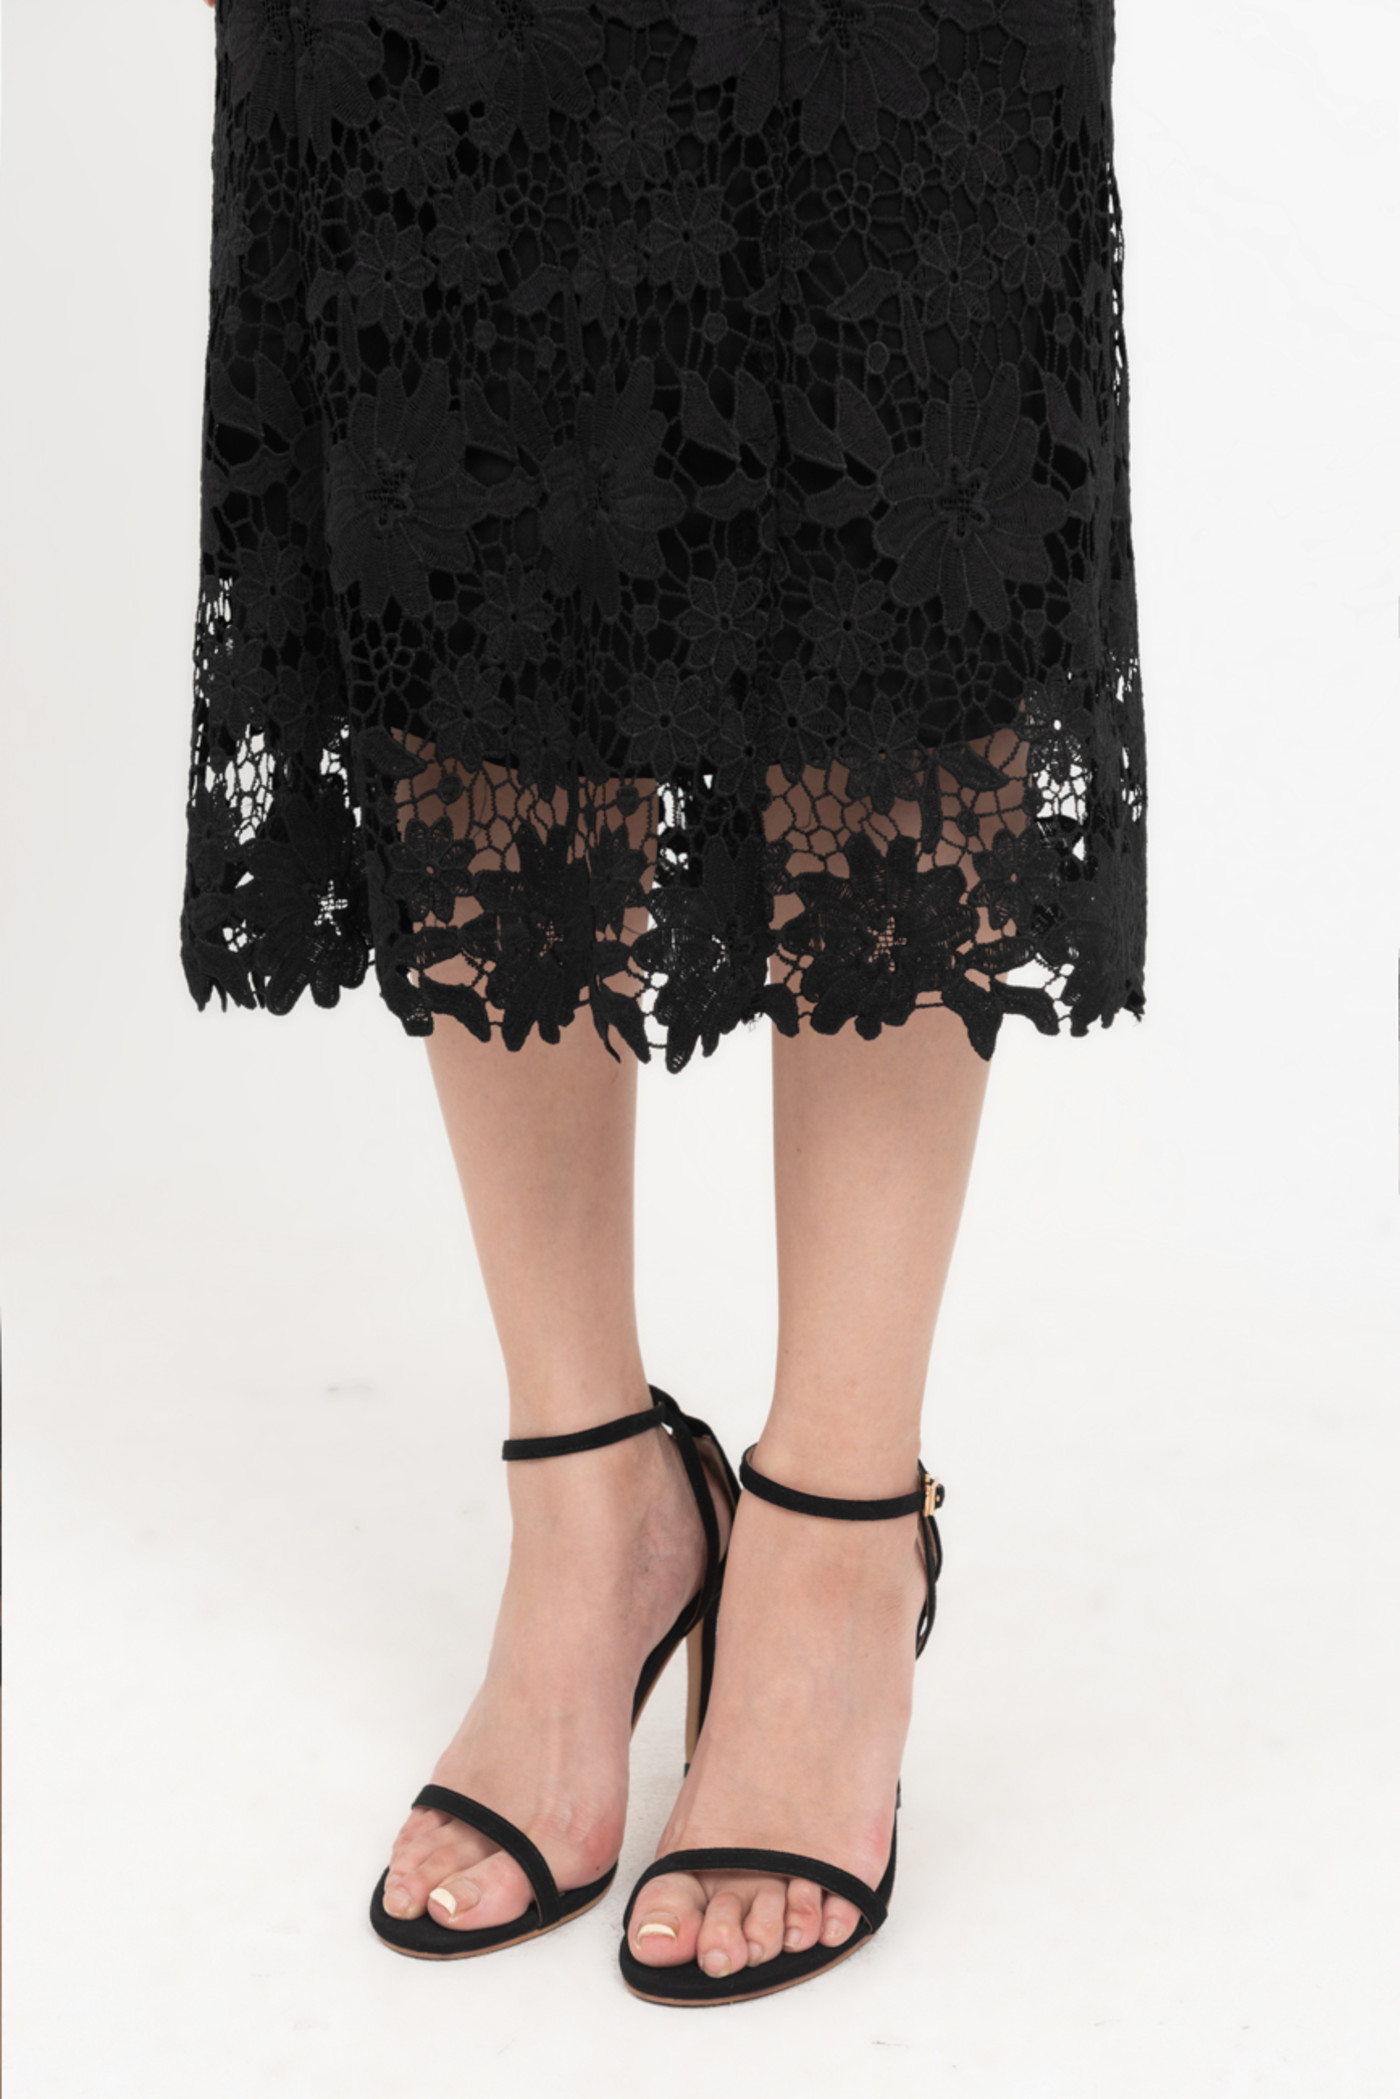 Lace skirt - Set áo tay bồng phối chân váy dài 